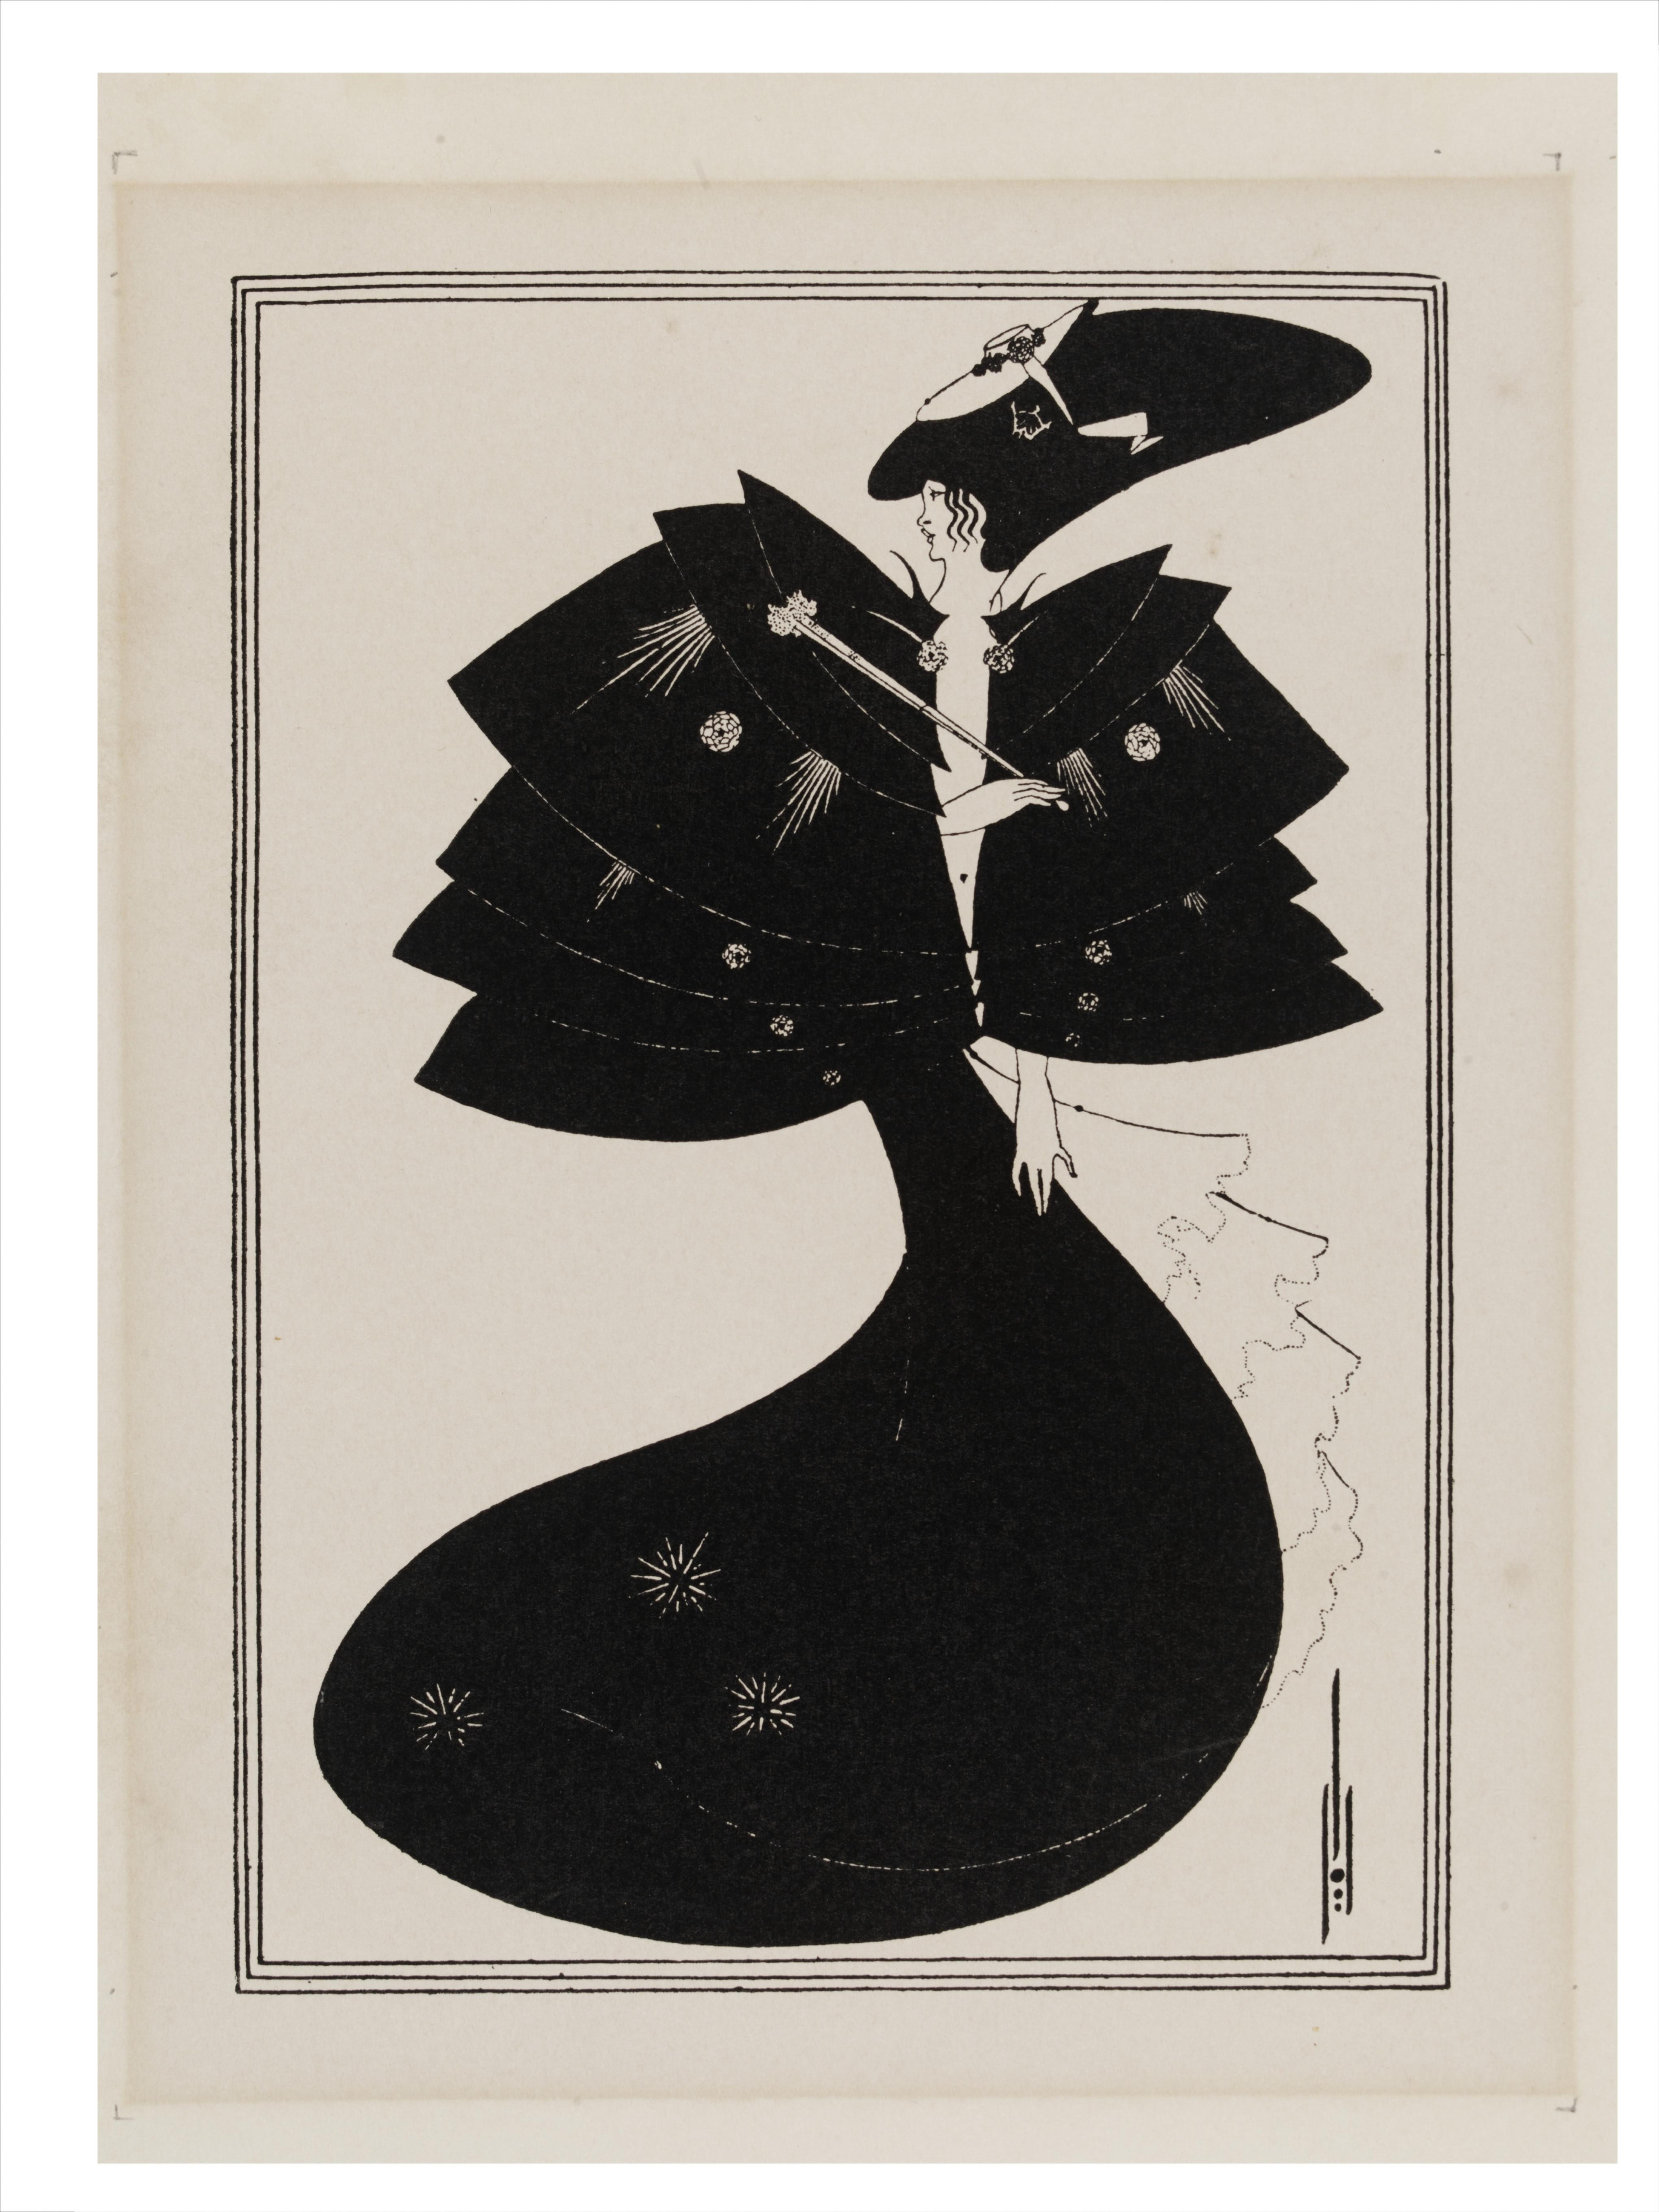 La capa negra. Aubrey Vincent Beardsley (1894). Del álbum de ilustraciones de Oscar Wilde © Victoria and Albert Museum